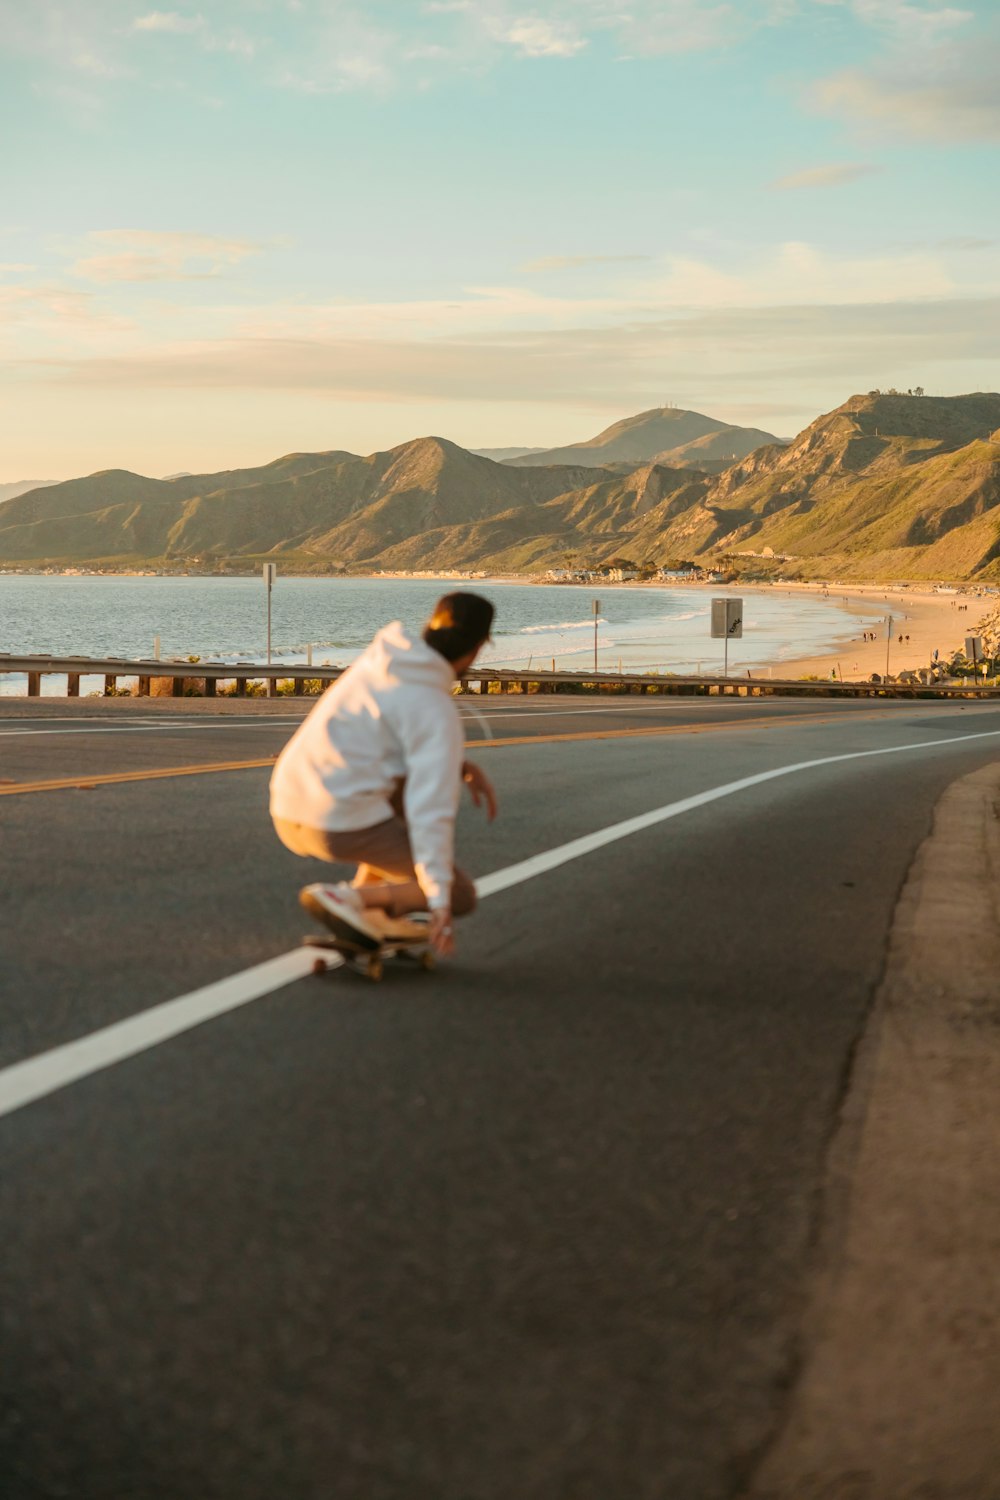 Ein Mann fährt auf einem Skateboard mitten auf einer Straße